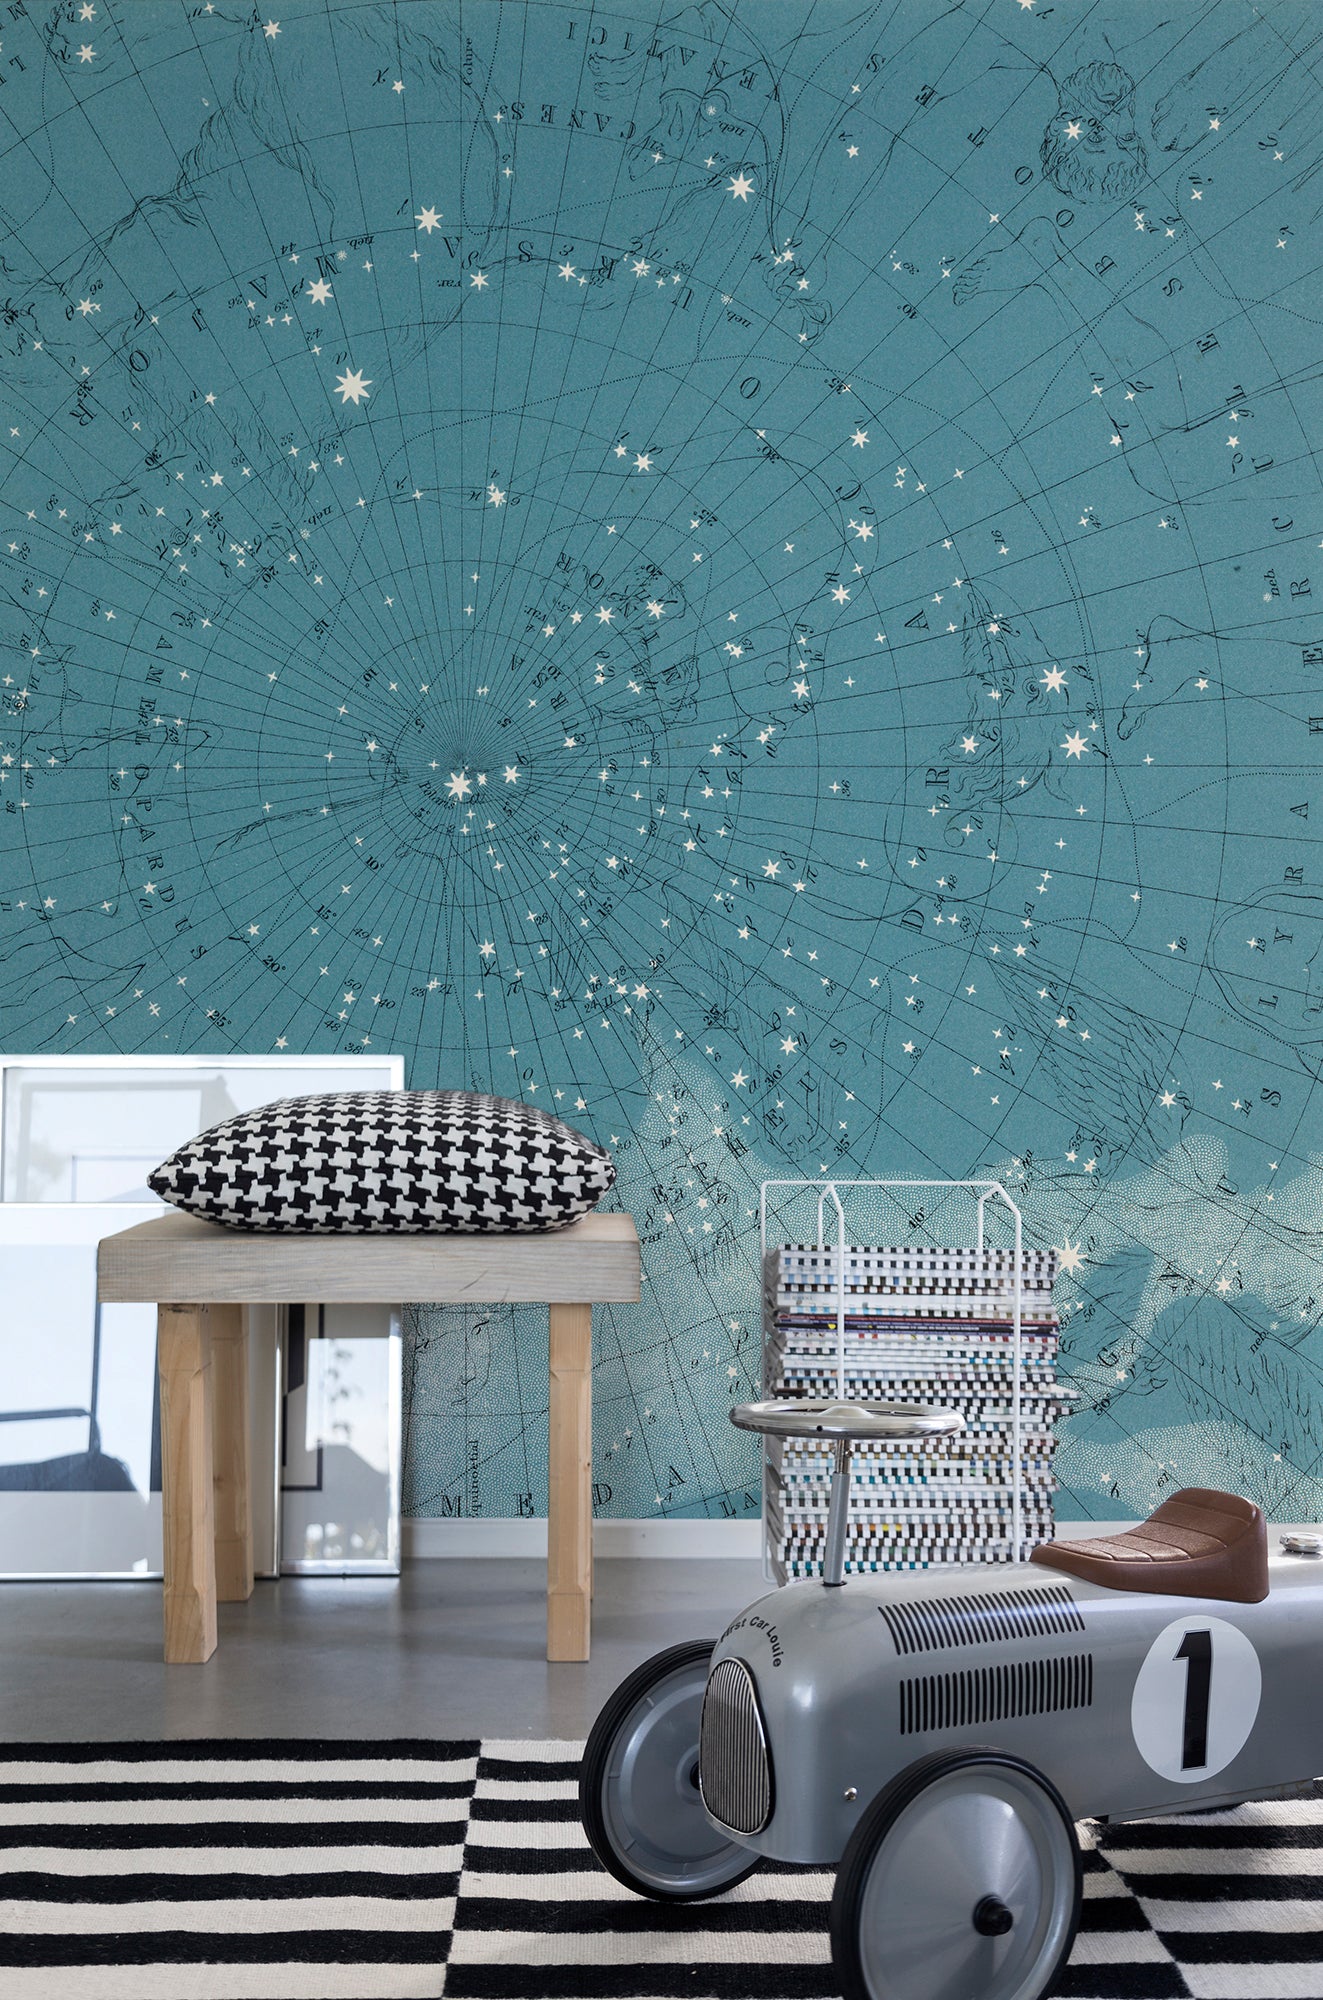 Atlas of Astronomy - Wallpaper Trader